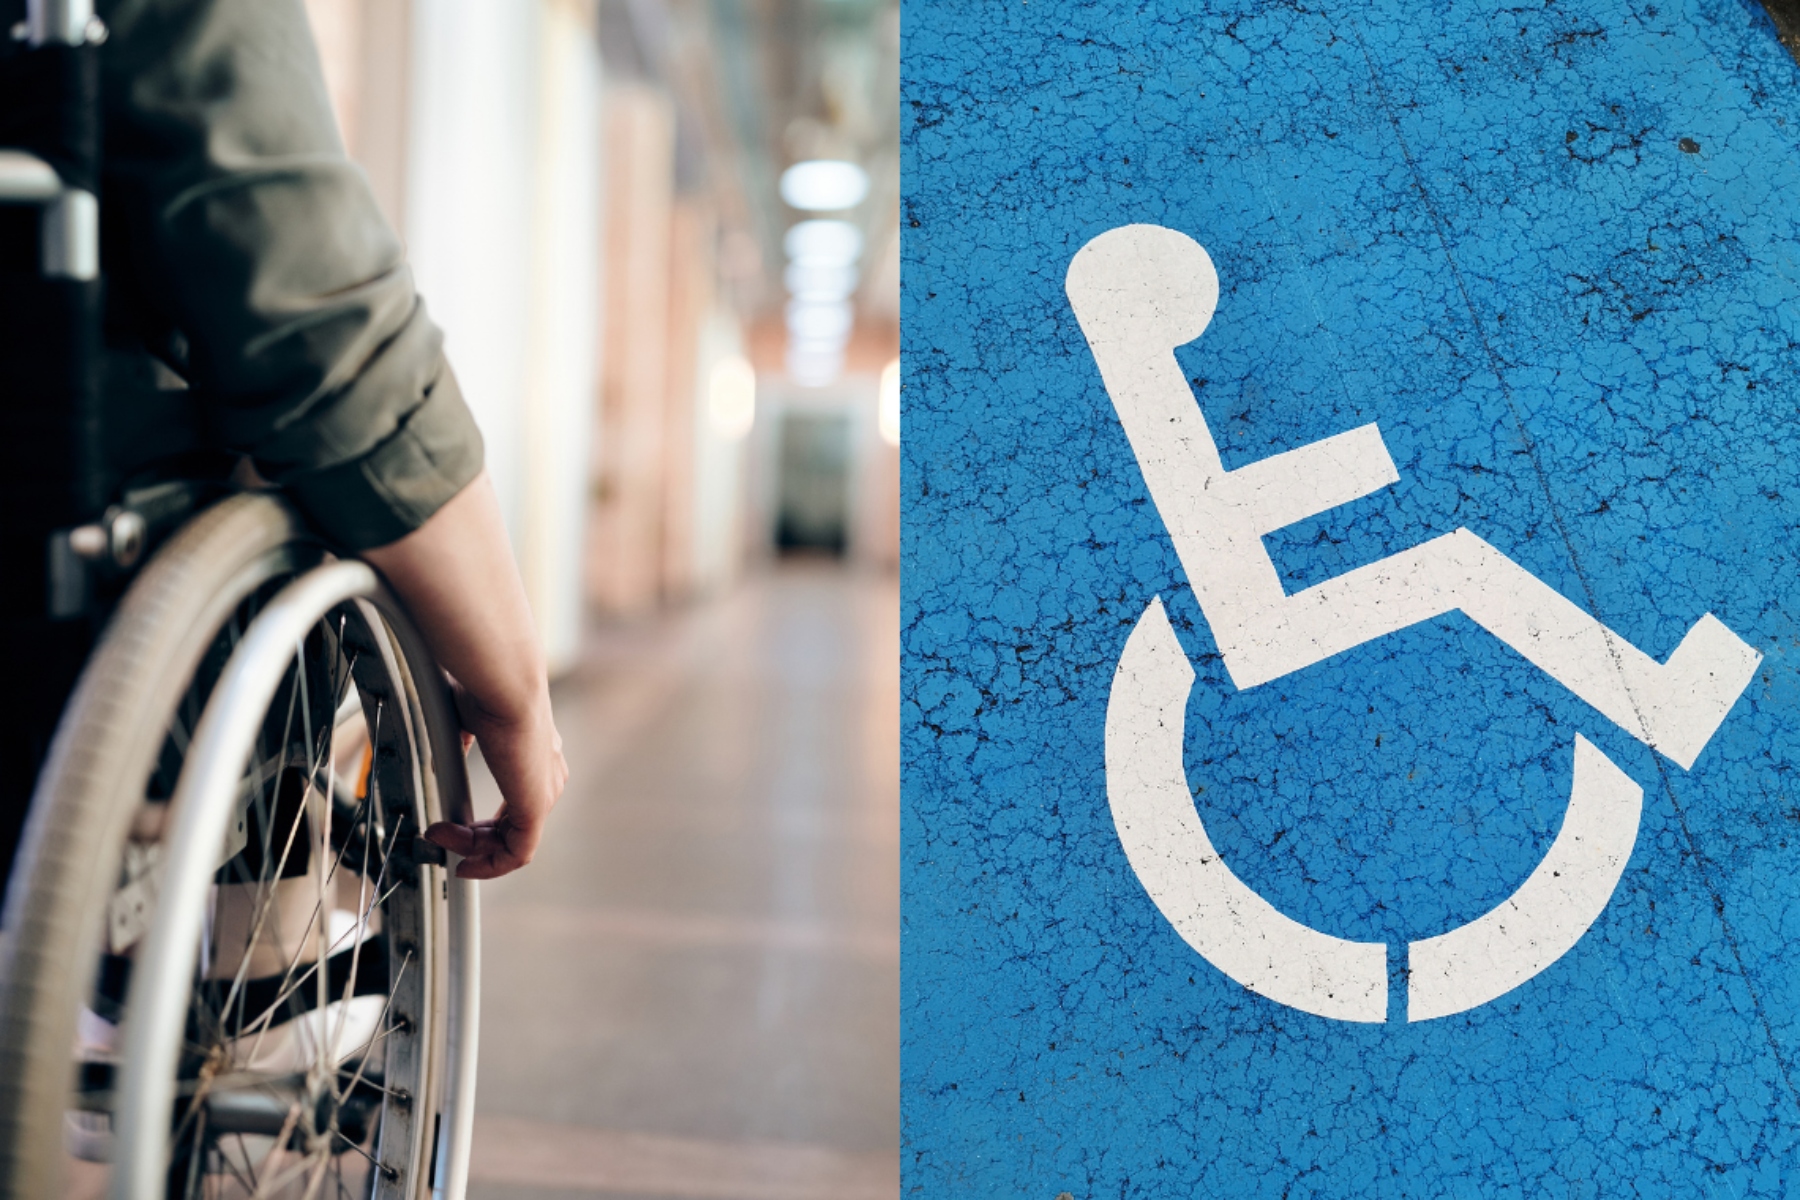 Η Κάρτα Αναπηρίας μοναδικό εργαλείο αναγνώρισης των ατόμων με αναπηρία και χρόνιες παθήσεις